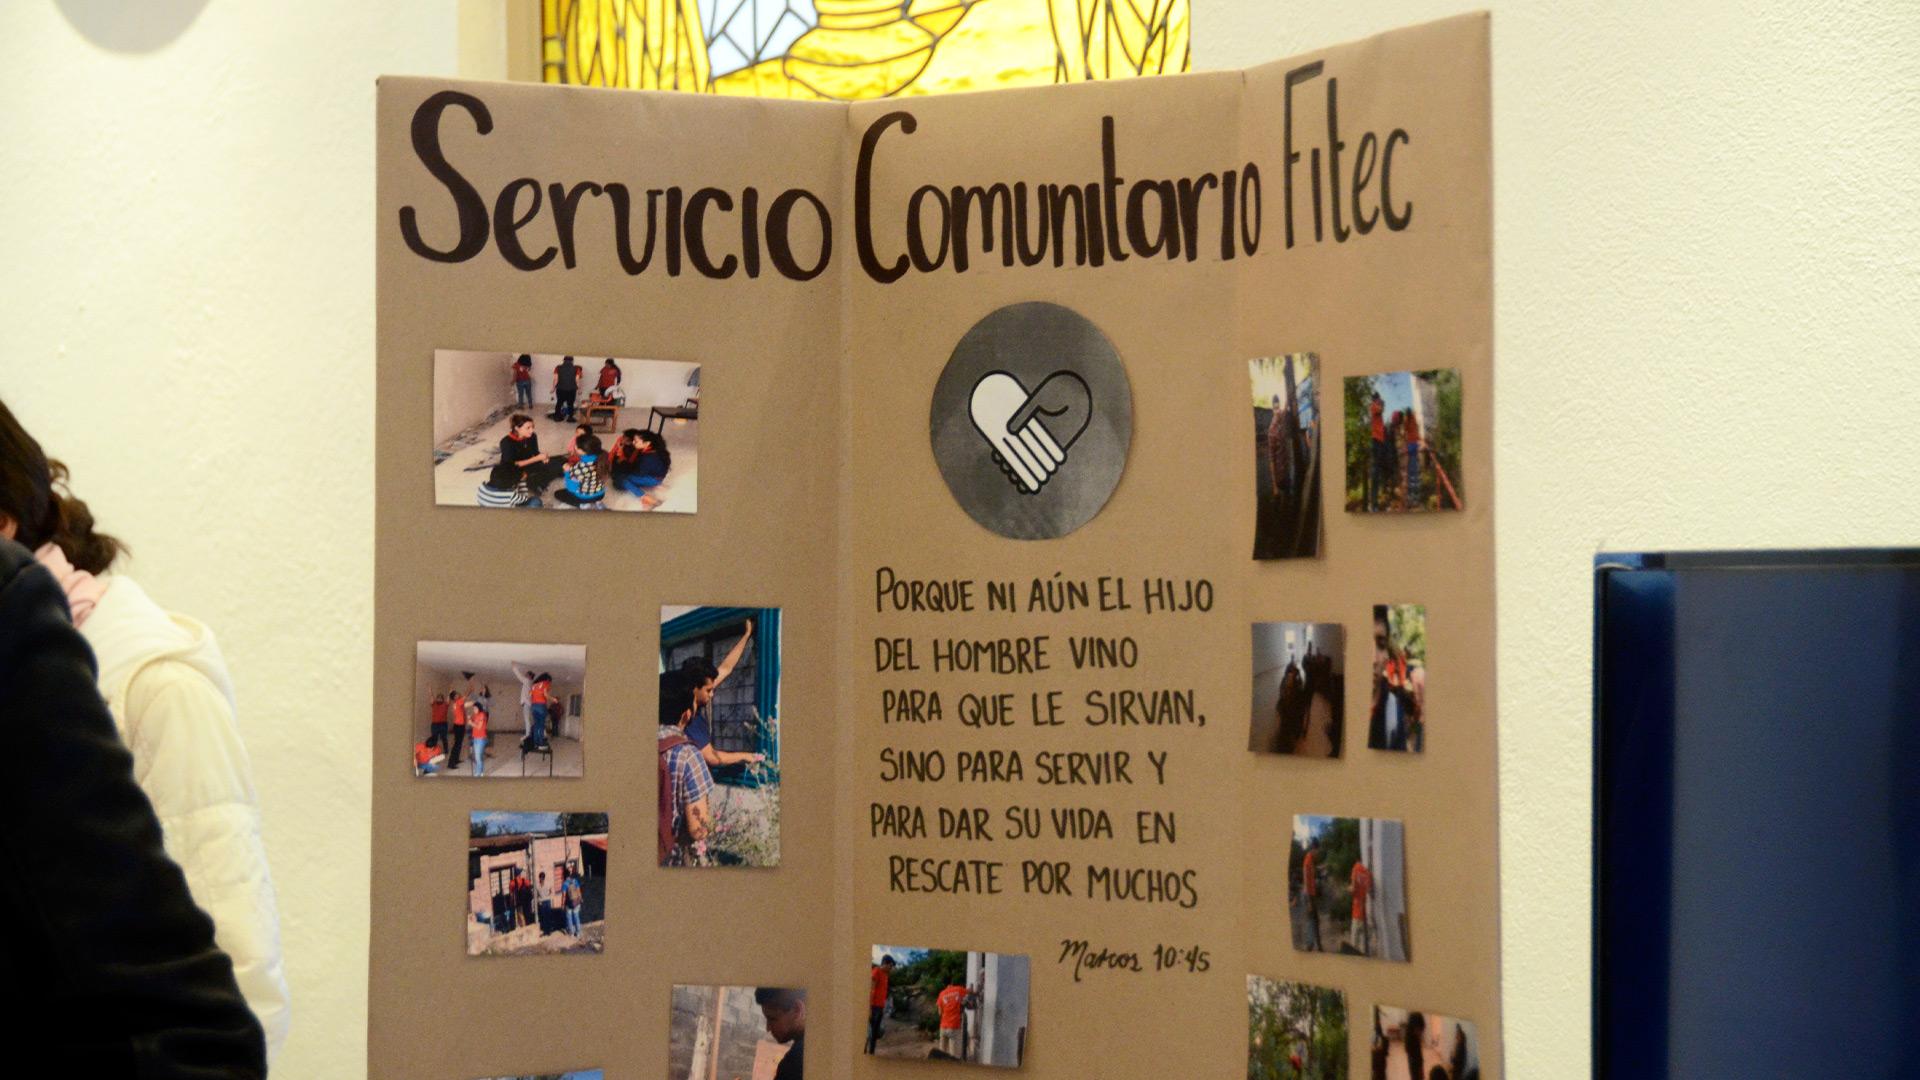 Alumnos de Servicio Comunitario comparten resultados del trabajo misionero en feria